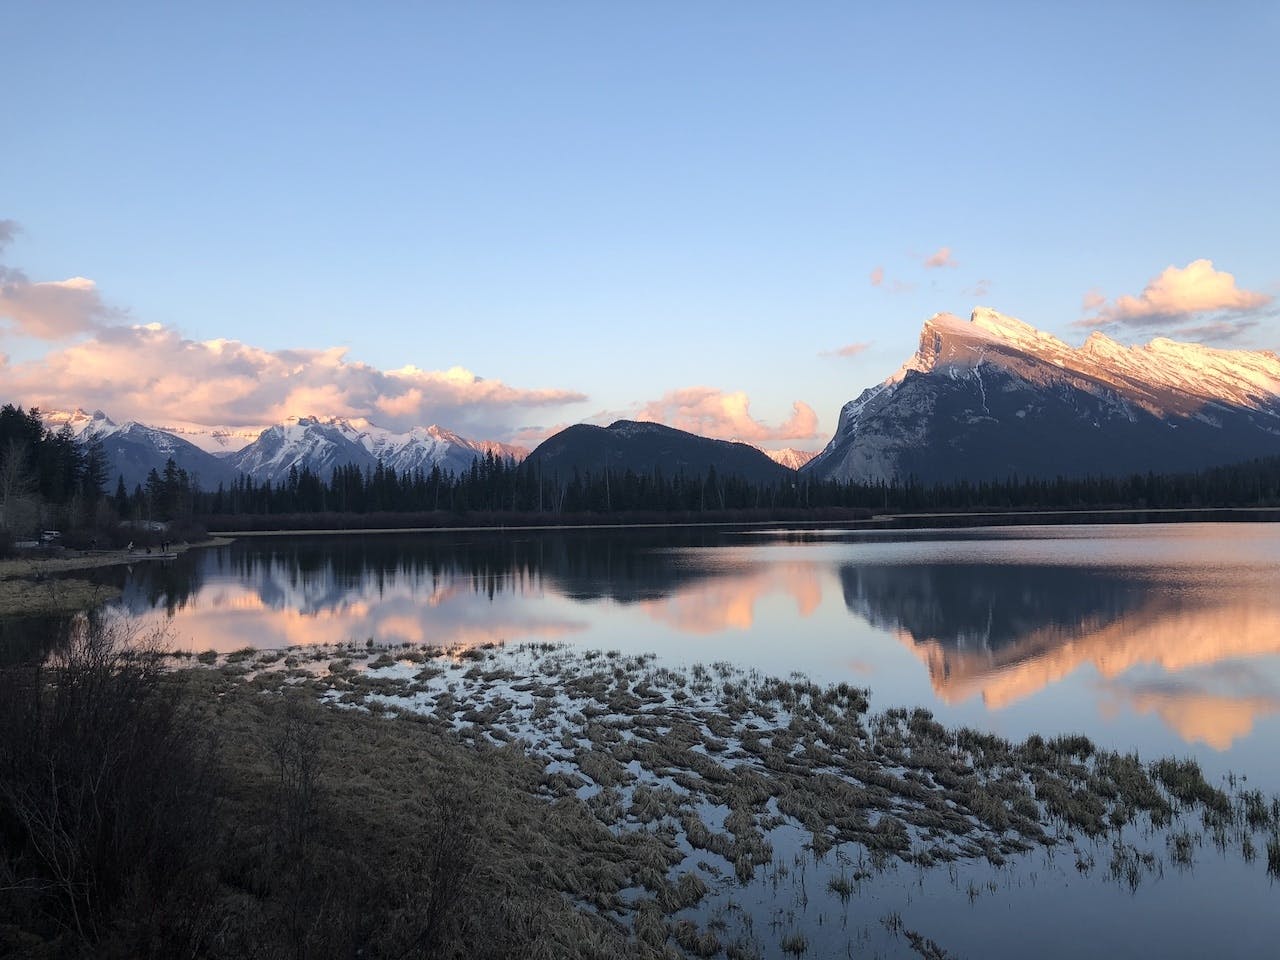 Excursão noturna de fotos de Banff saindo de Calgary